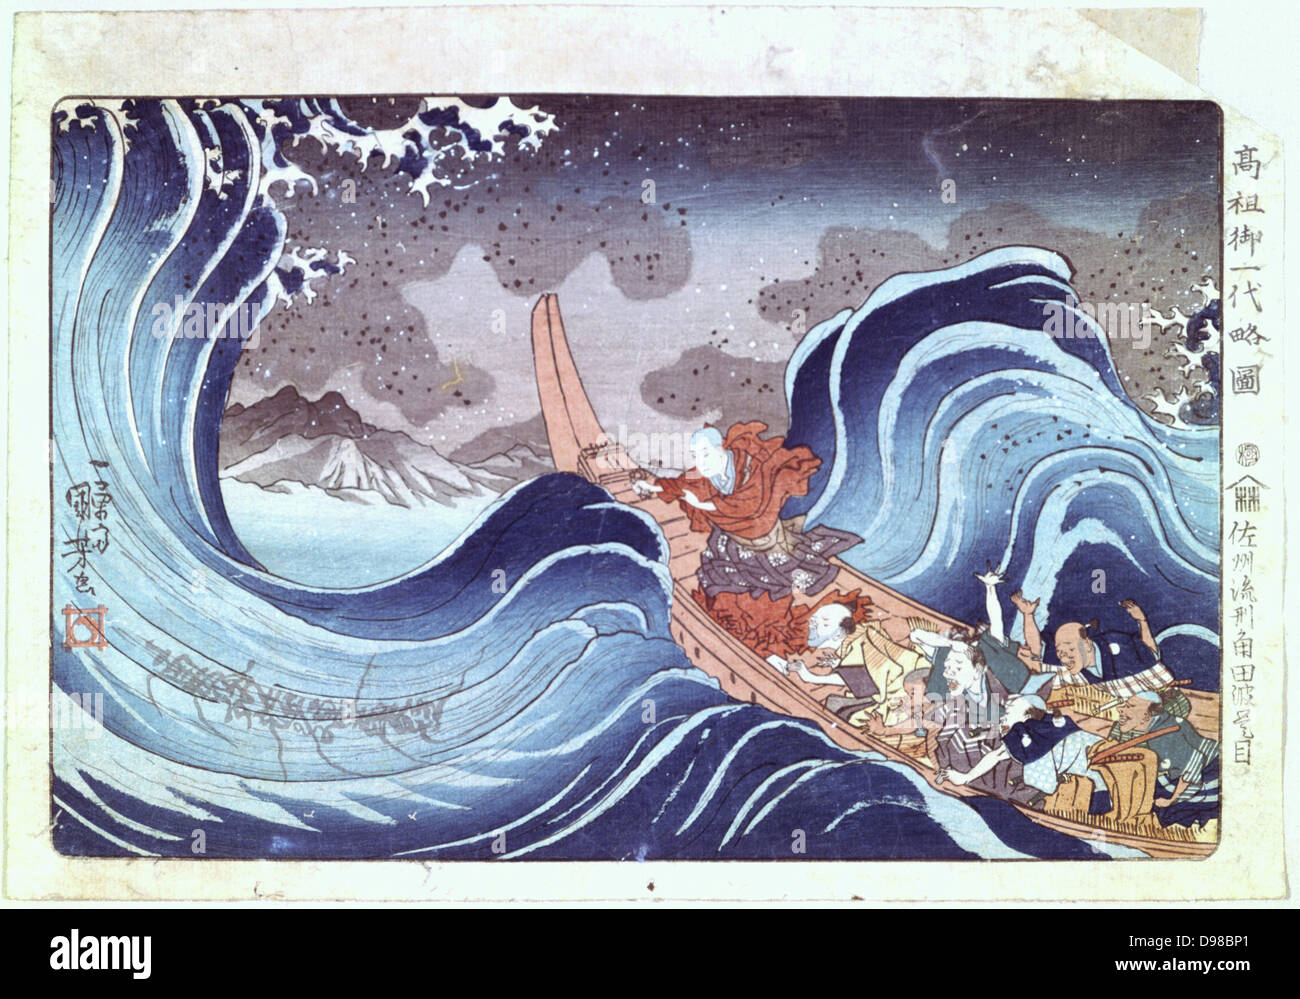 Le moine bouddhiste calme la tempête" - gravure sur bois en couleur. Utagawa, Kunyoshi (c1797-1851) artiste japonais et graveur. Banque D'Images